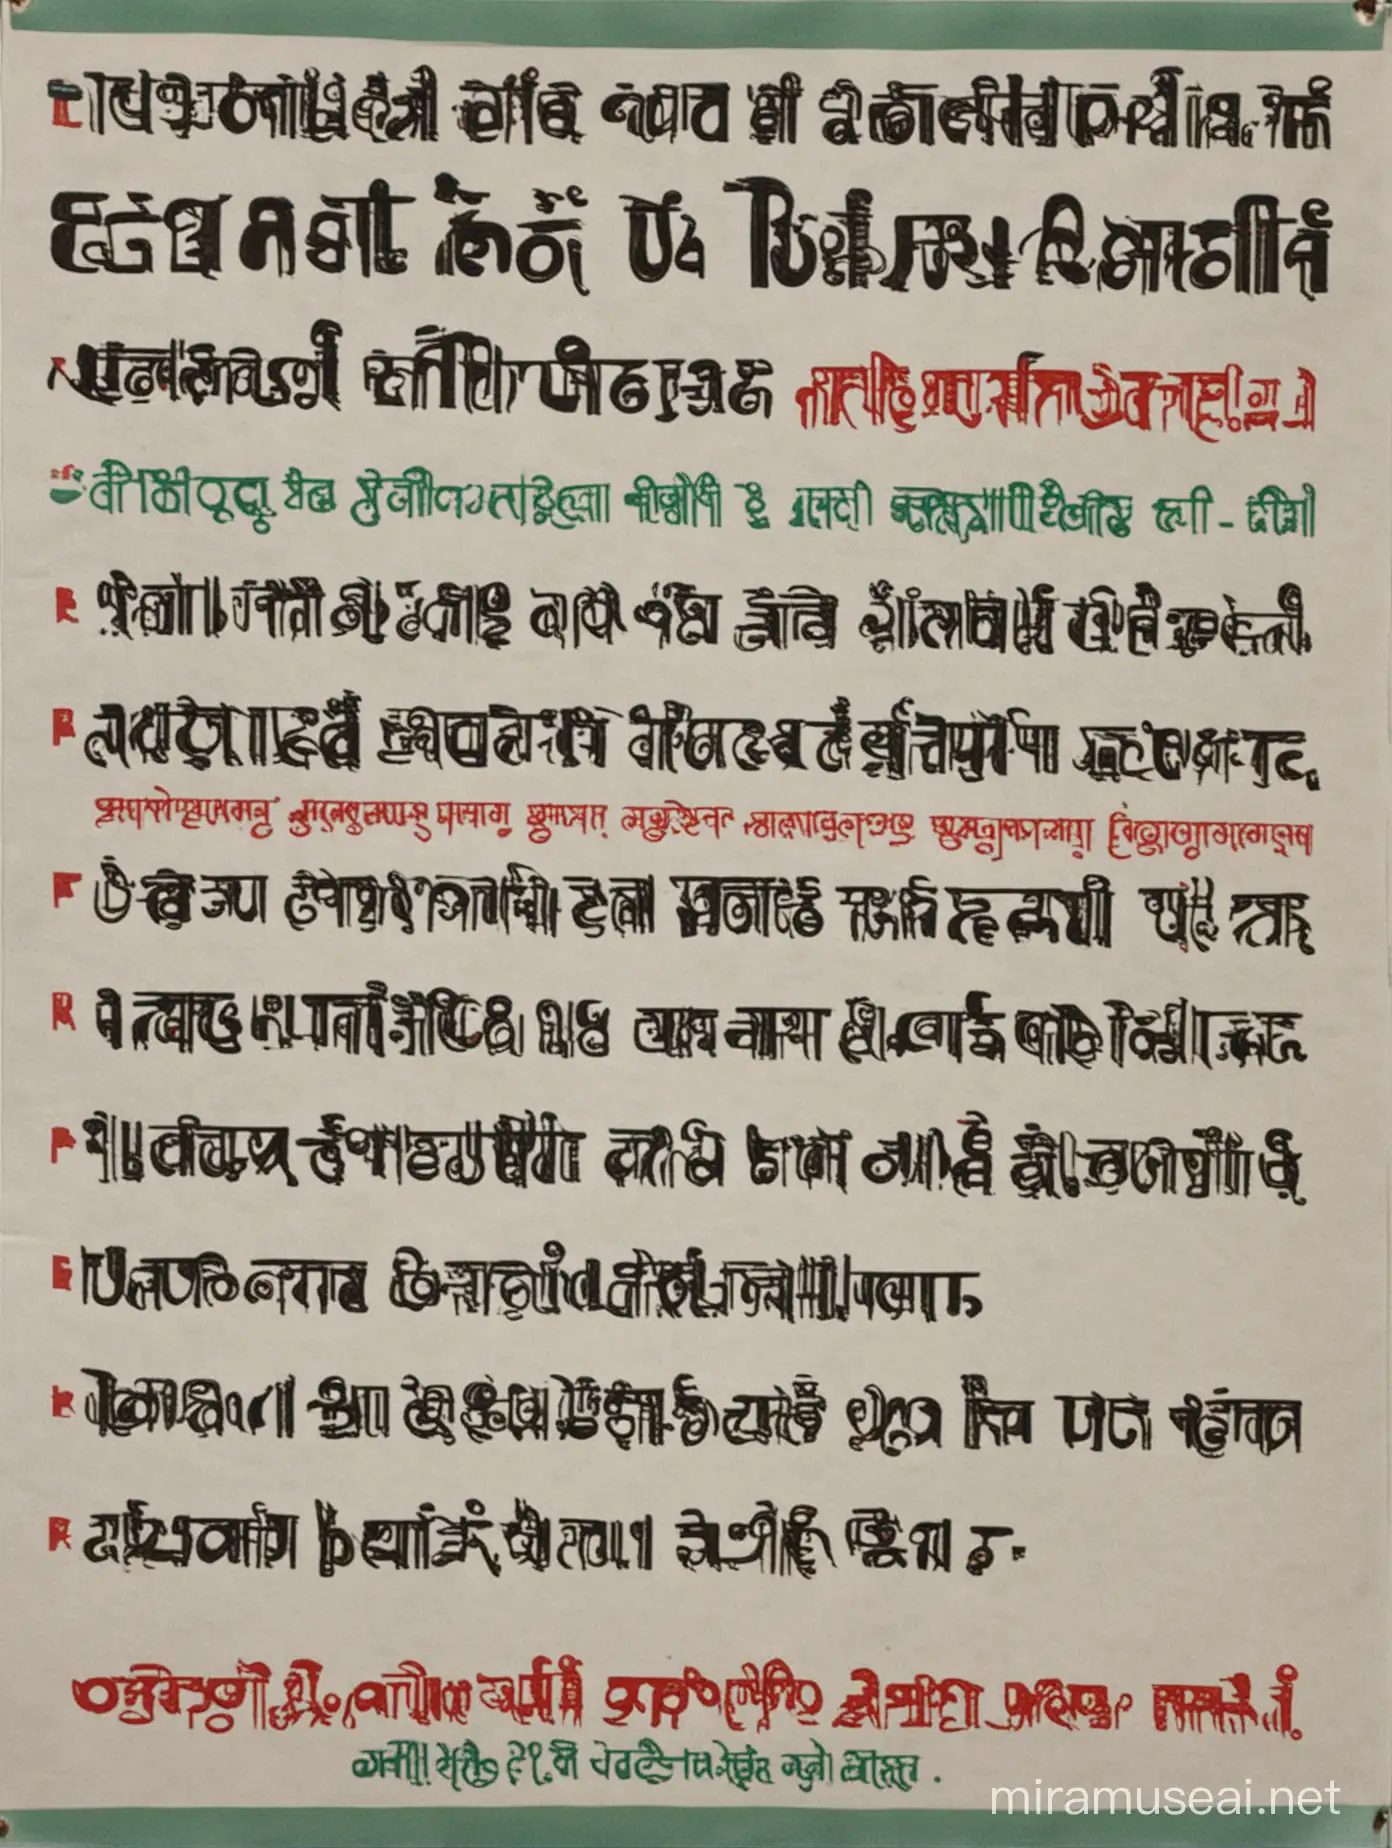 A poster written or visually displayed "Translation English to Bangla, Bangla to English'